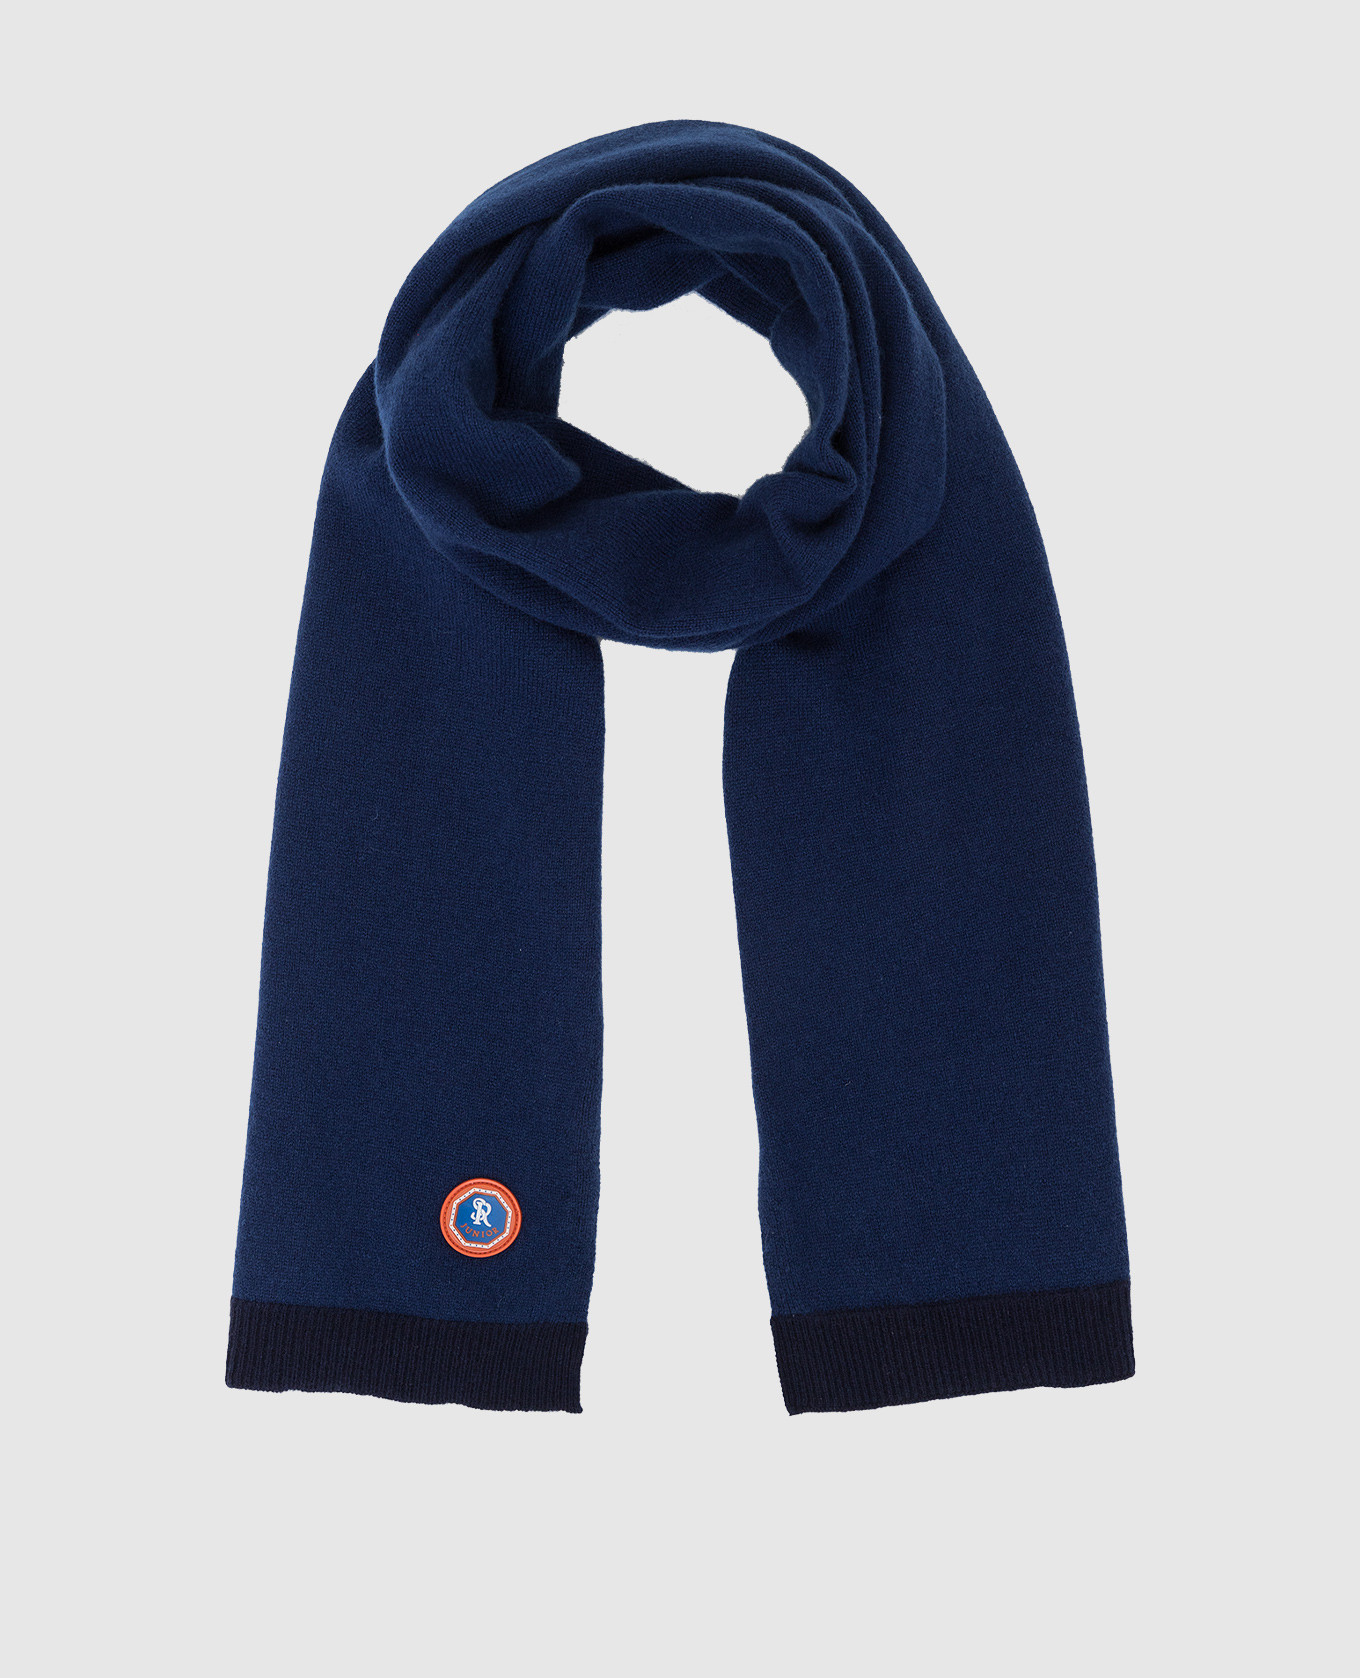 Children's dark blue cashmere scarf